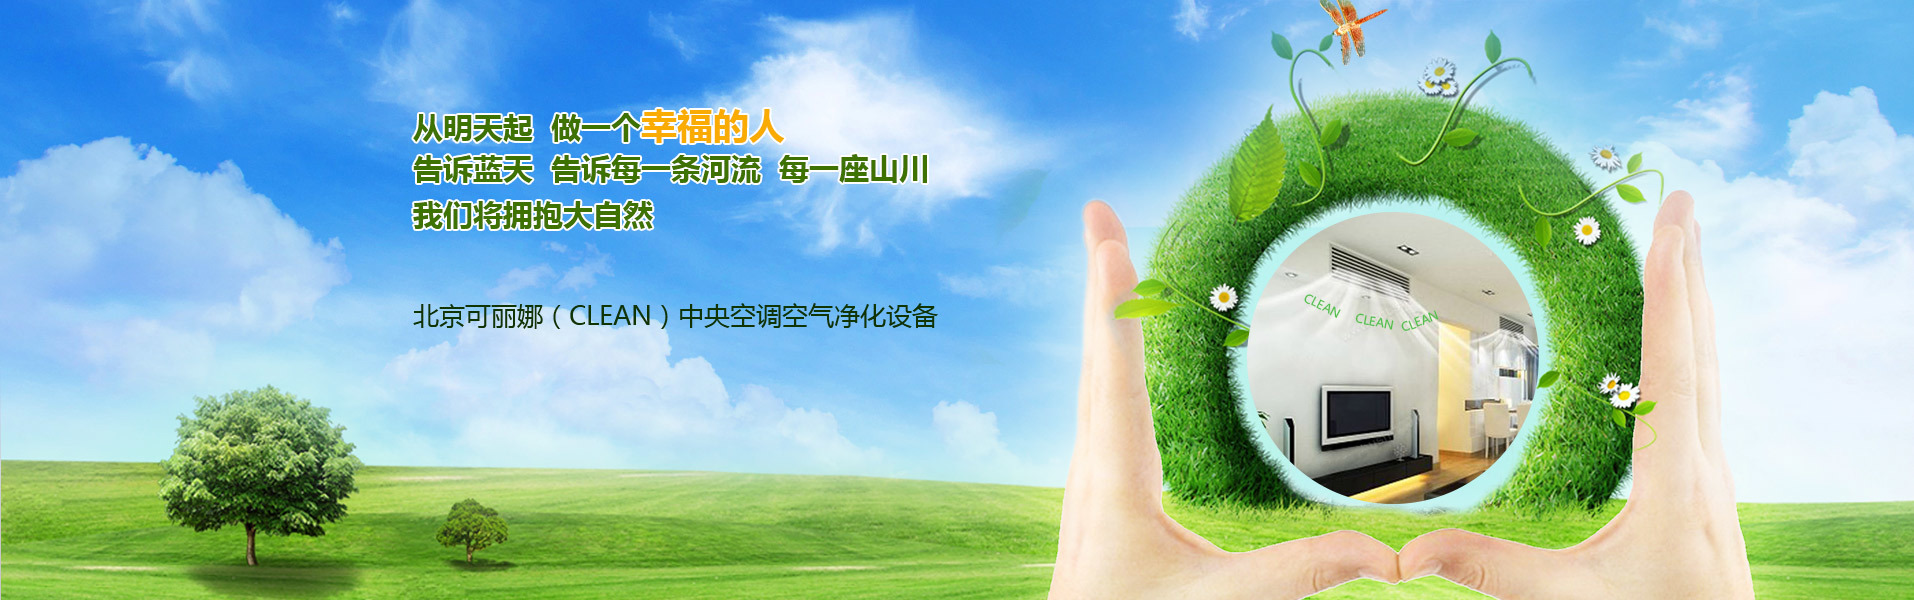 北京可丽娜中央空调清洗有限公司